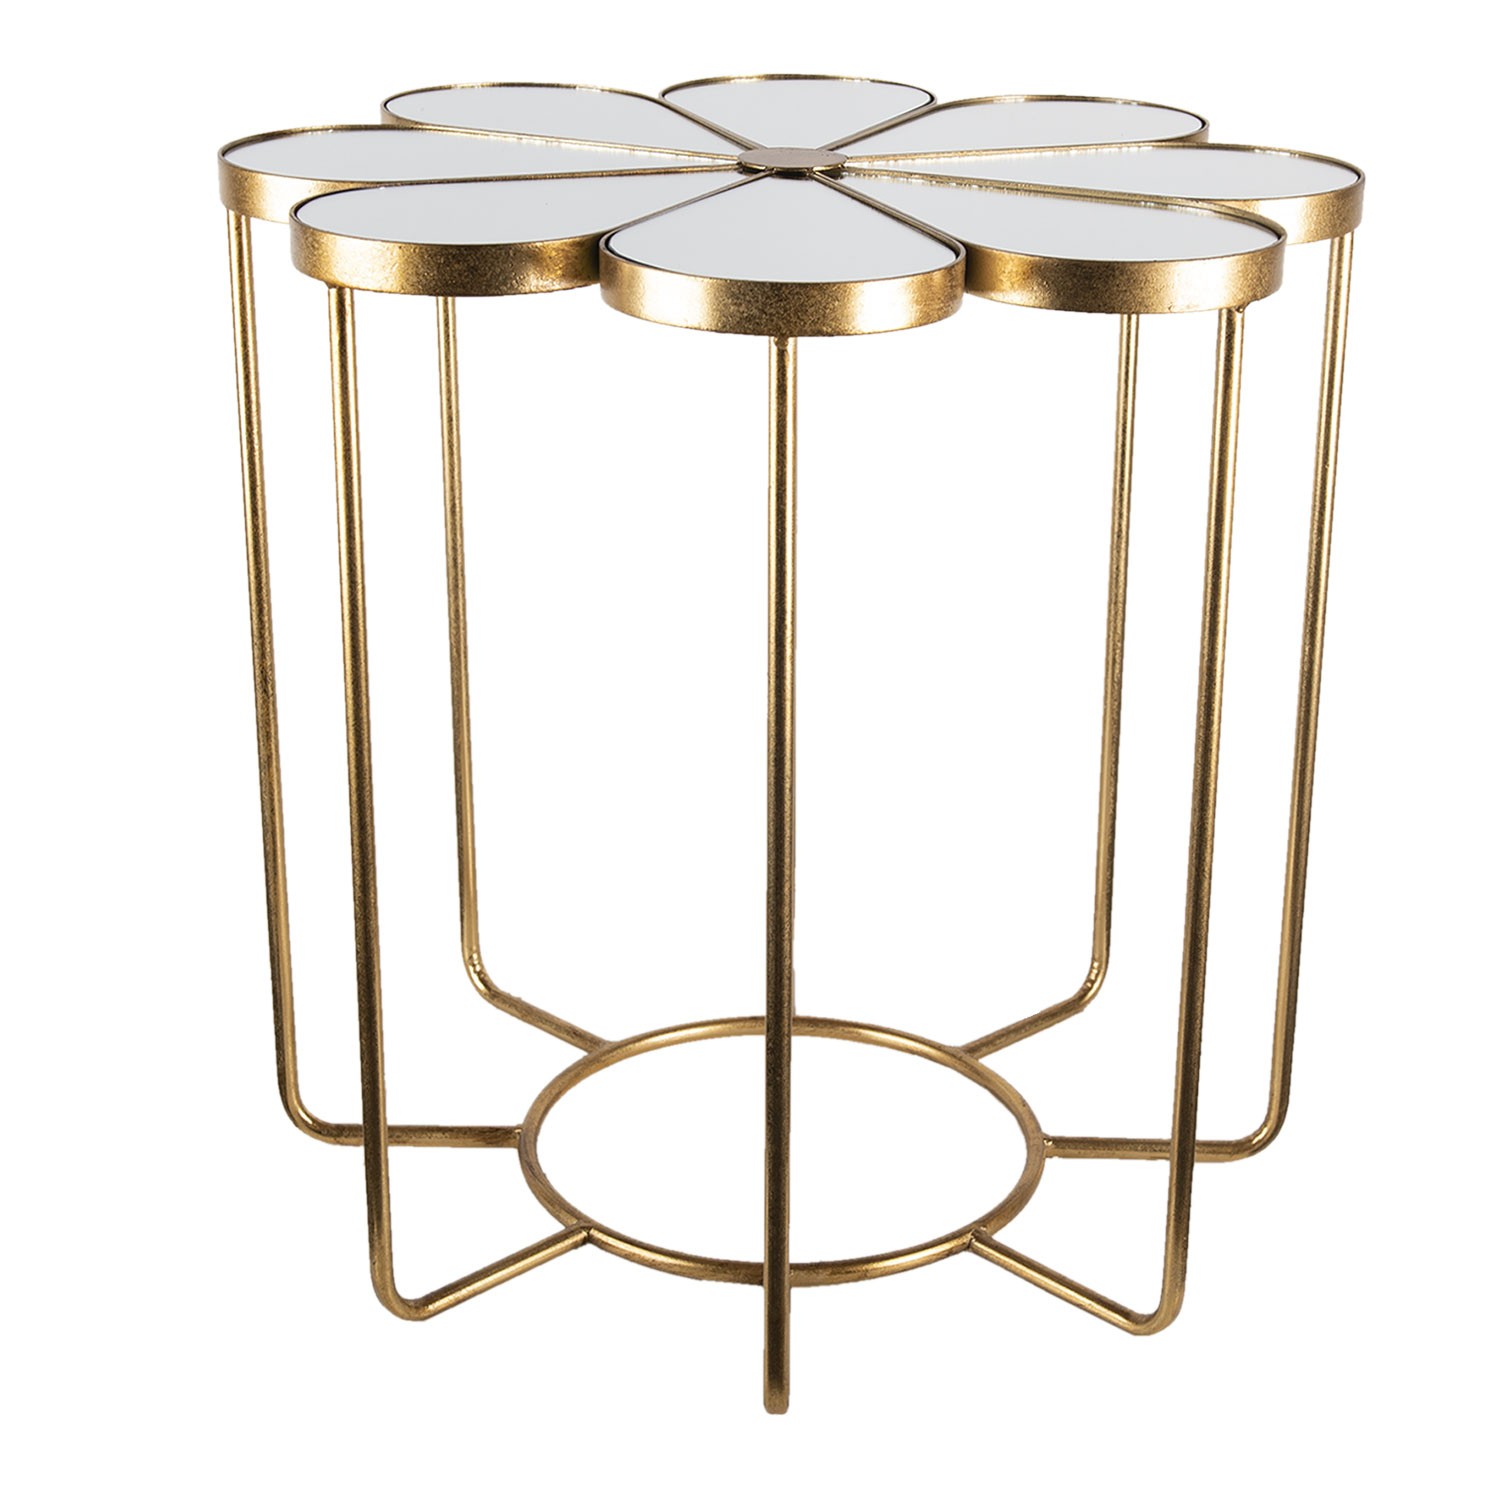 Zlatý kovový odkládací stolek Flower s deskou ve tvaru květu - Ø 62*61 cm 5Y0908